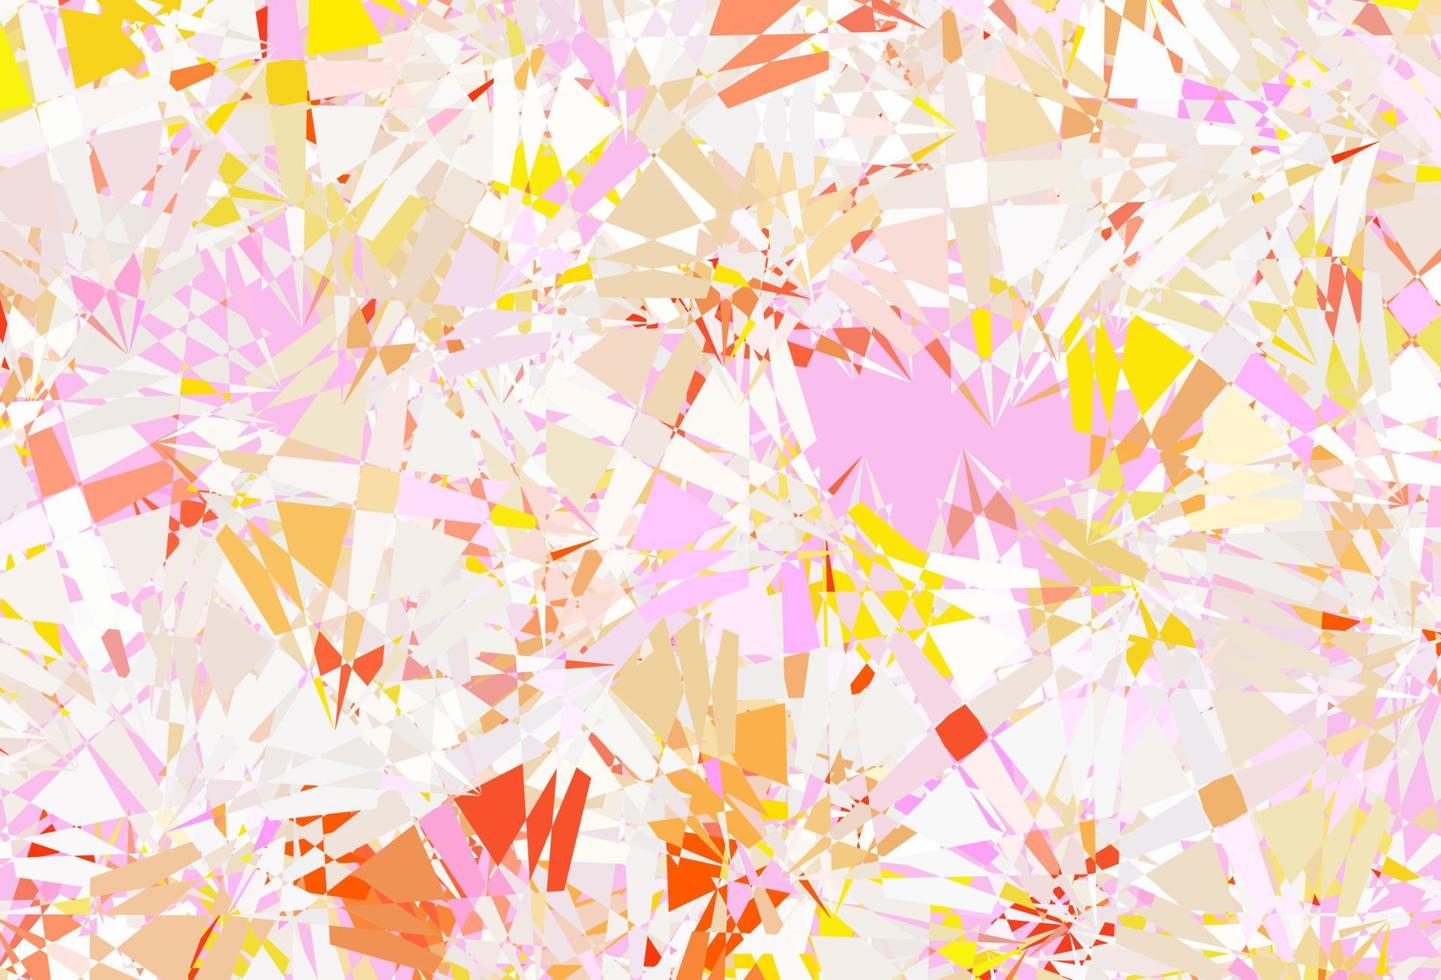 textura de vector rosa claro, amarillo con triángulos al azar.